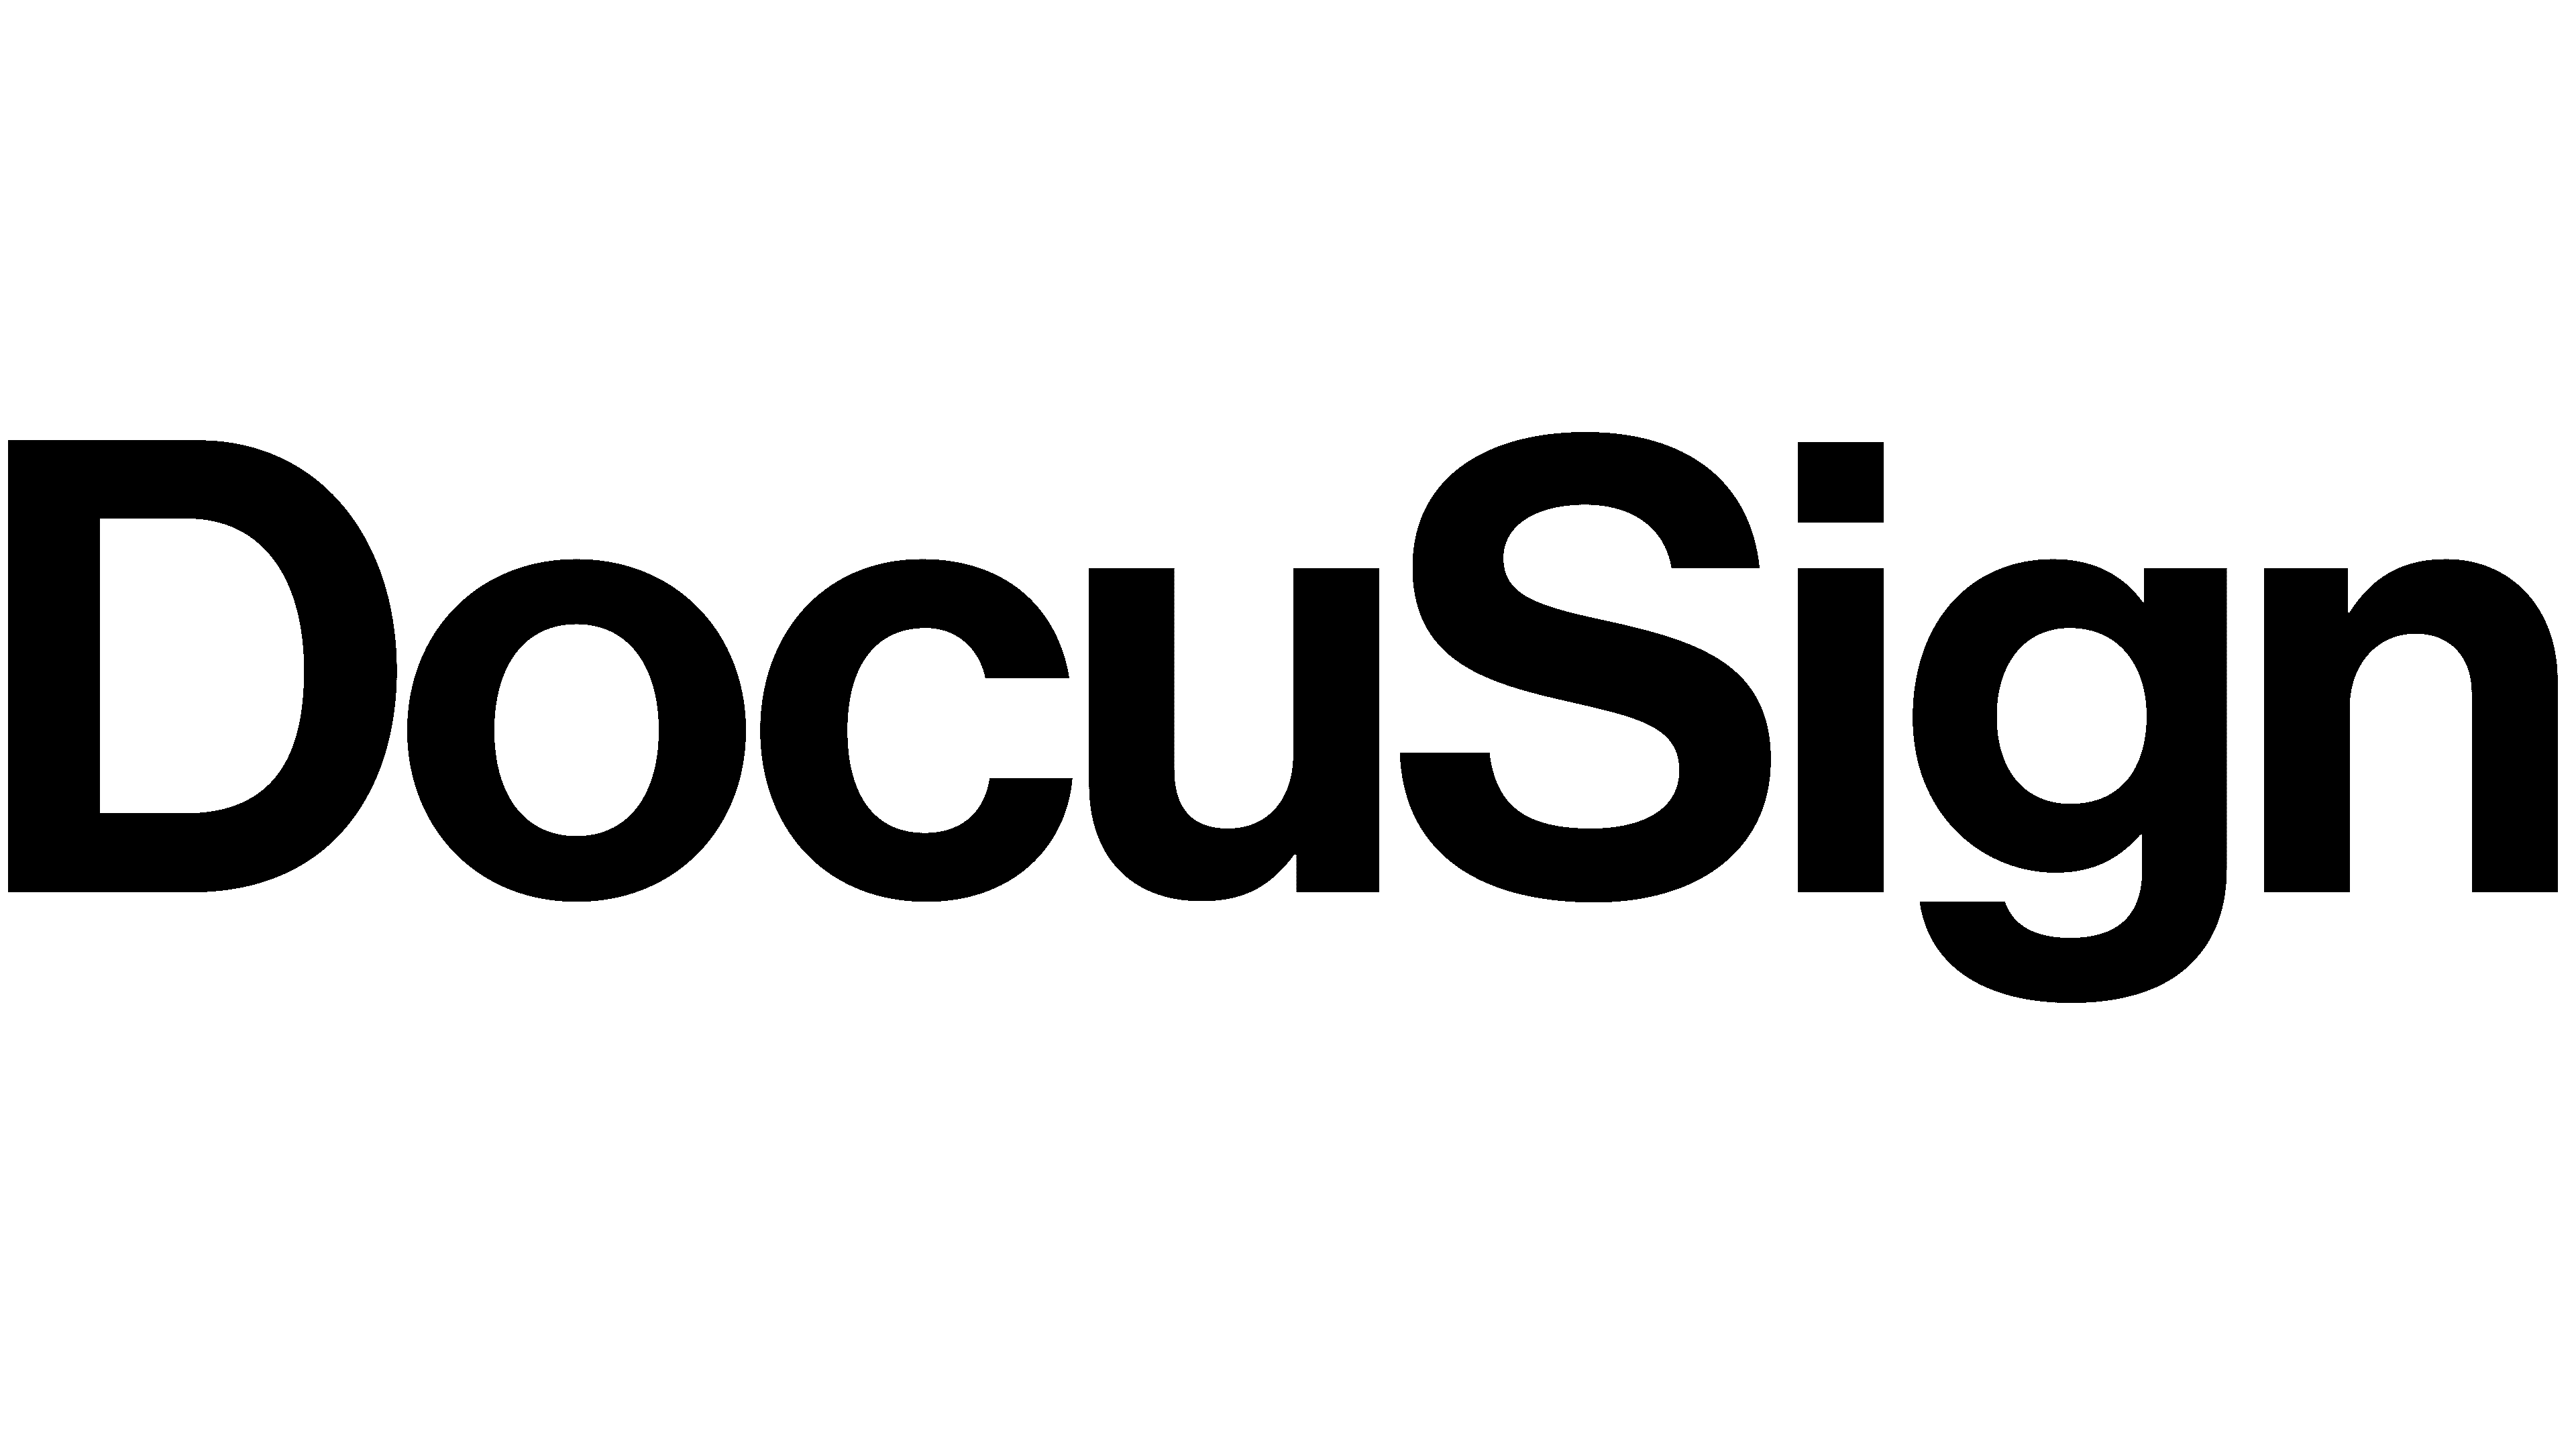 Integration Partner Logo